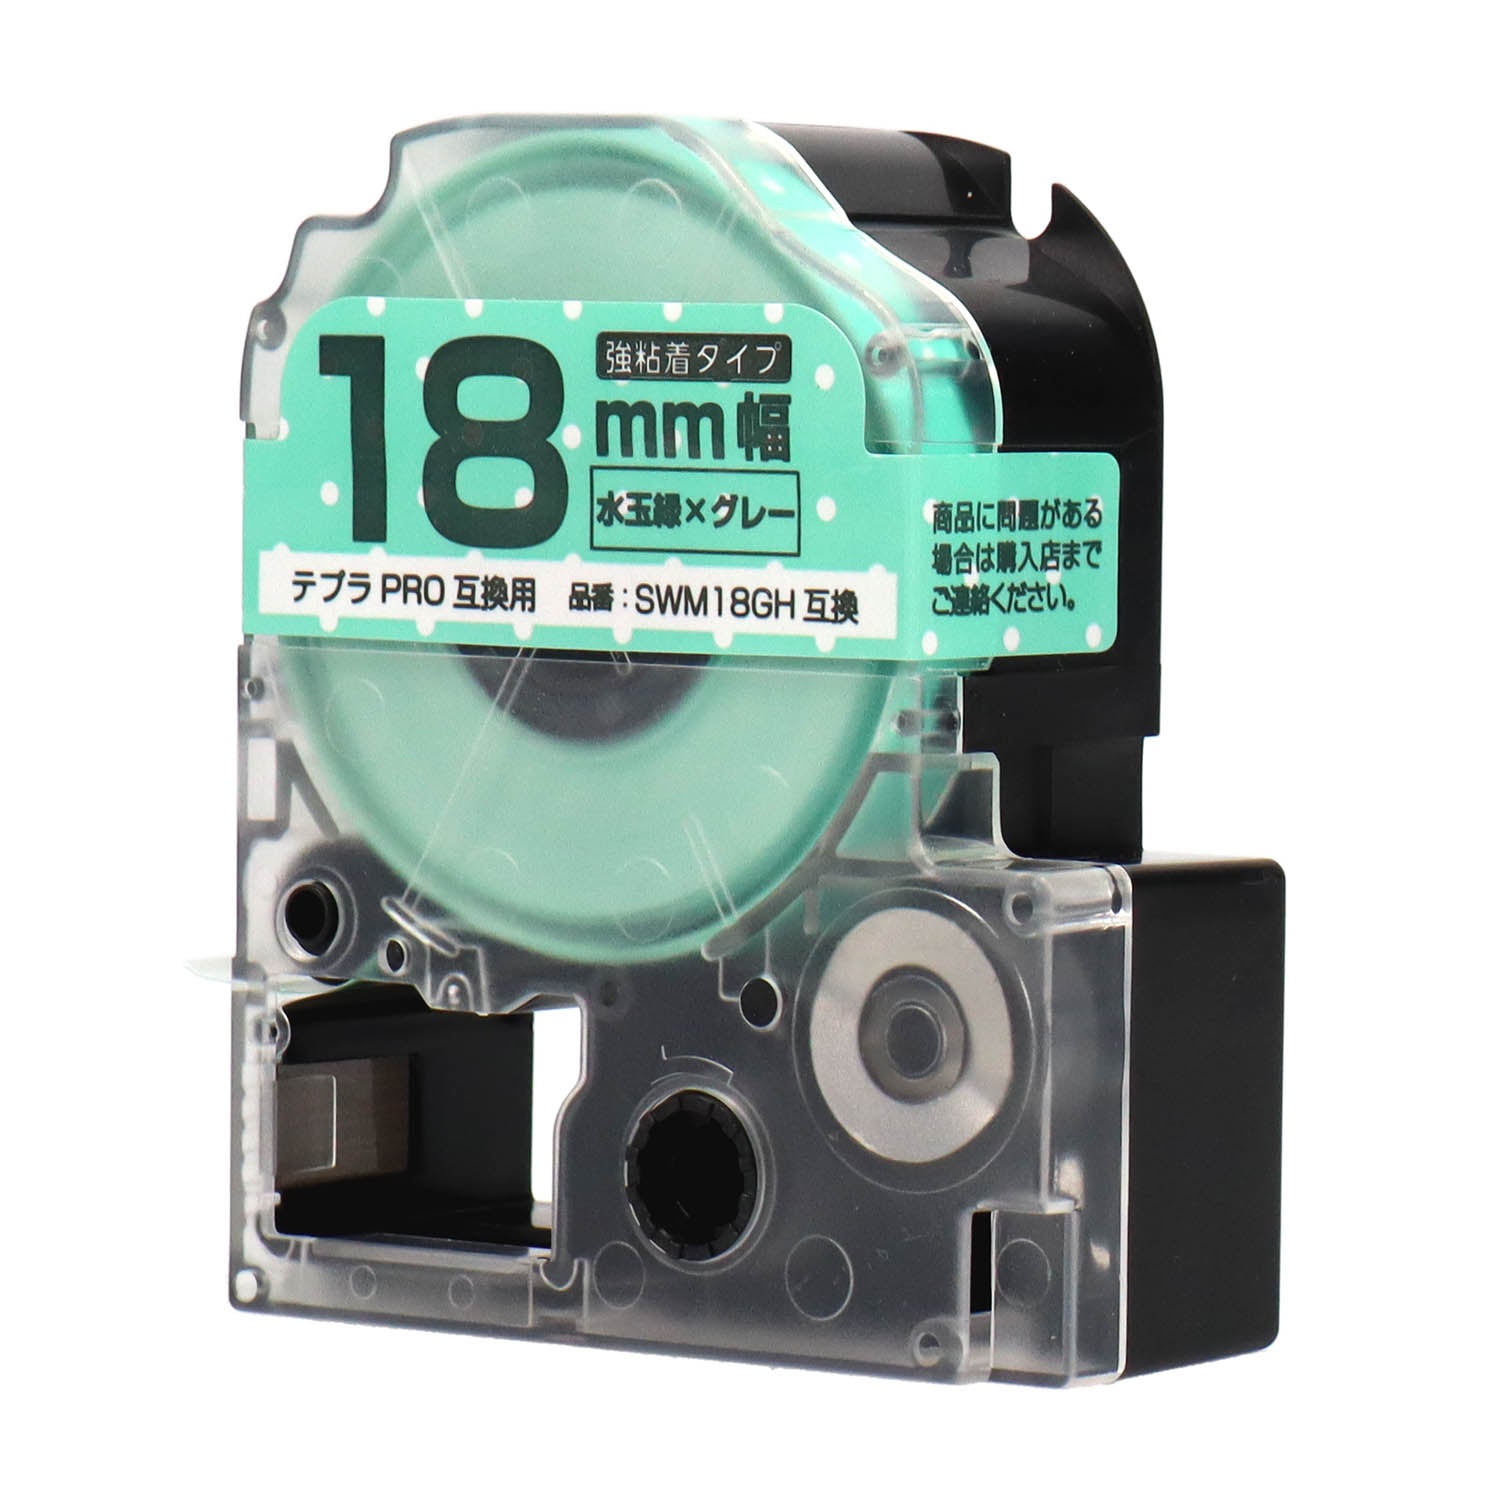 テプラPRO用互換テープカートリッジ 水玉緑×グレー文字 18mm